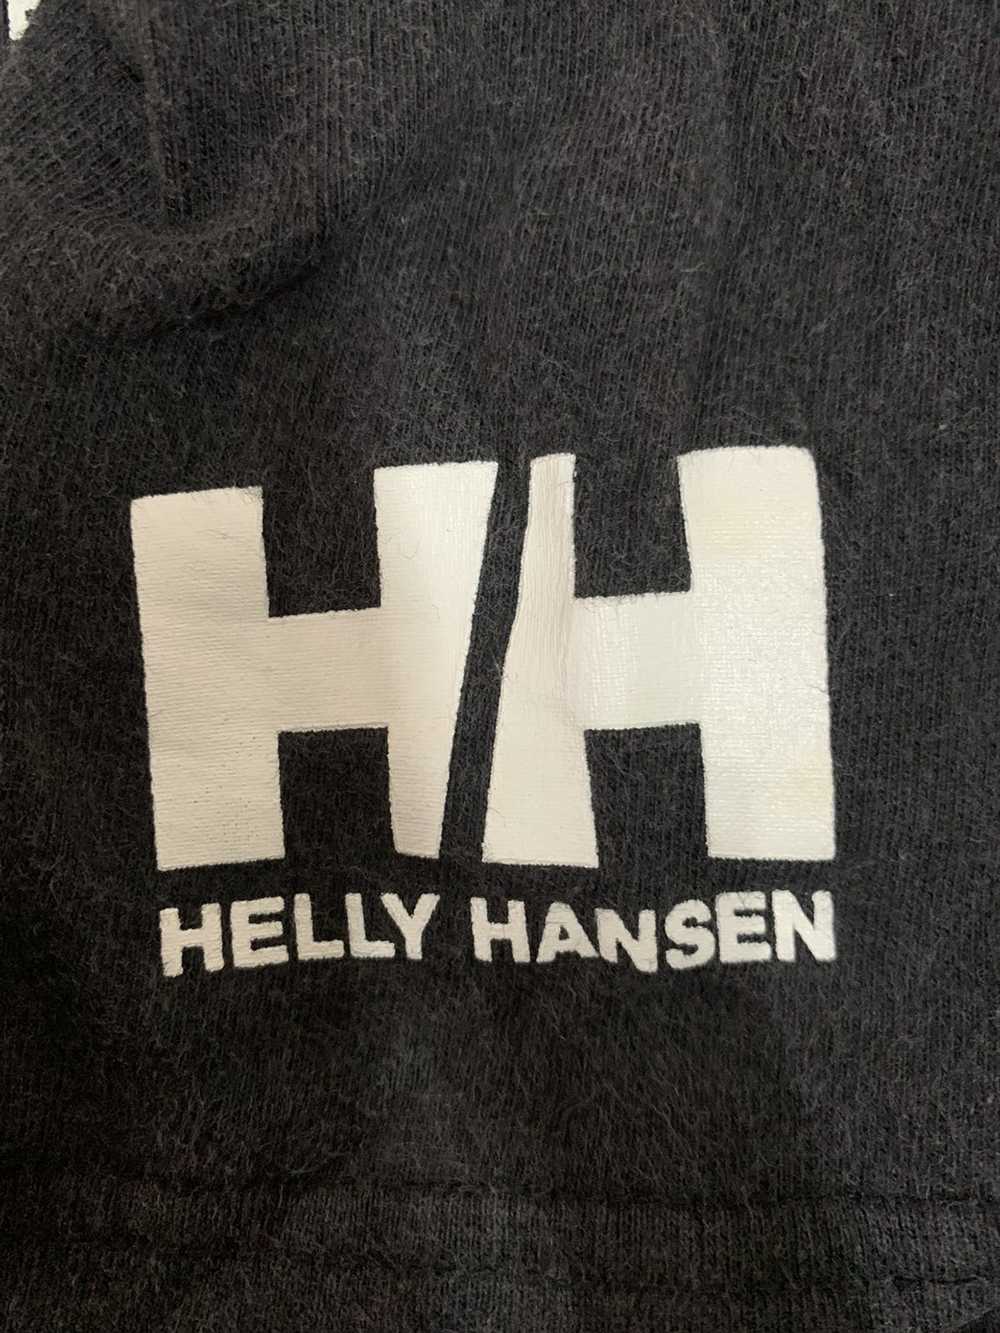 Brand × Helly Hansen × Vintage Rare‼️Helly Hensen - image 3